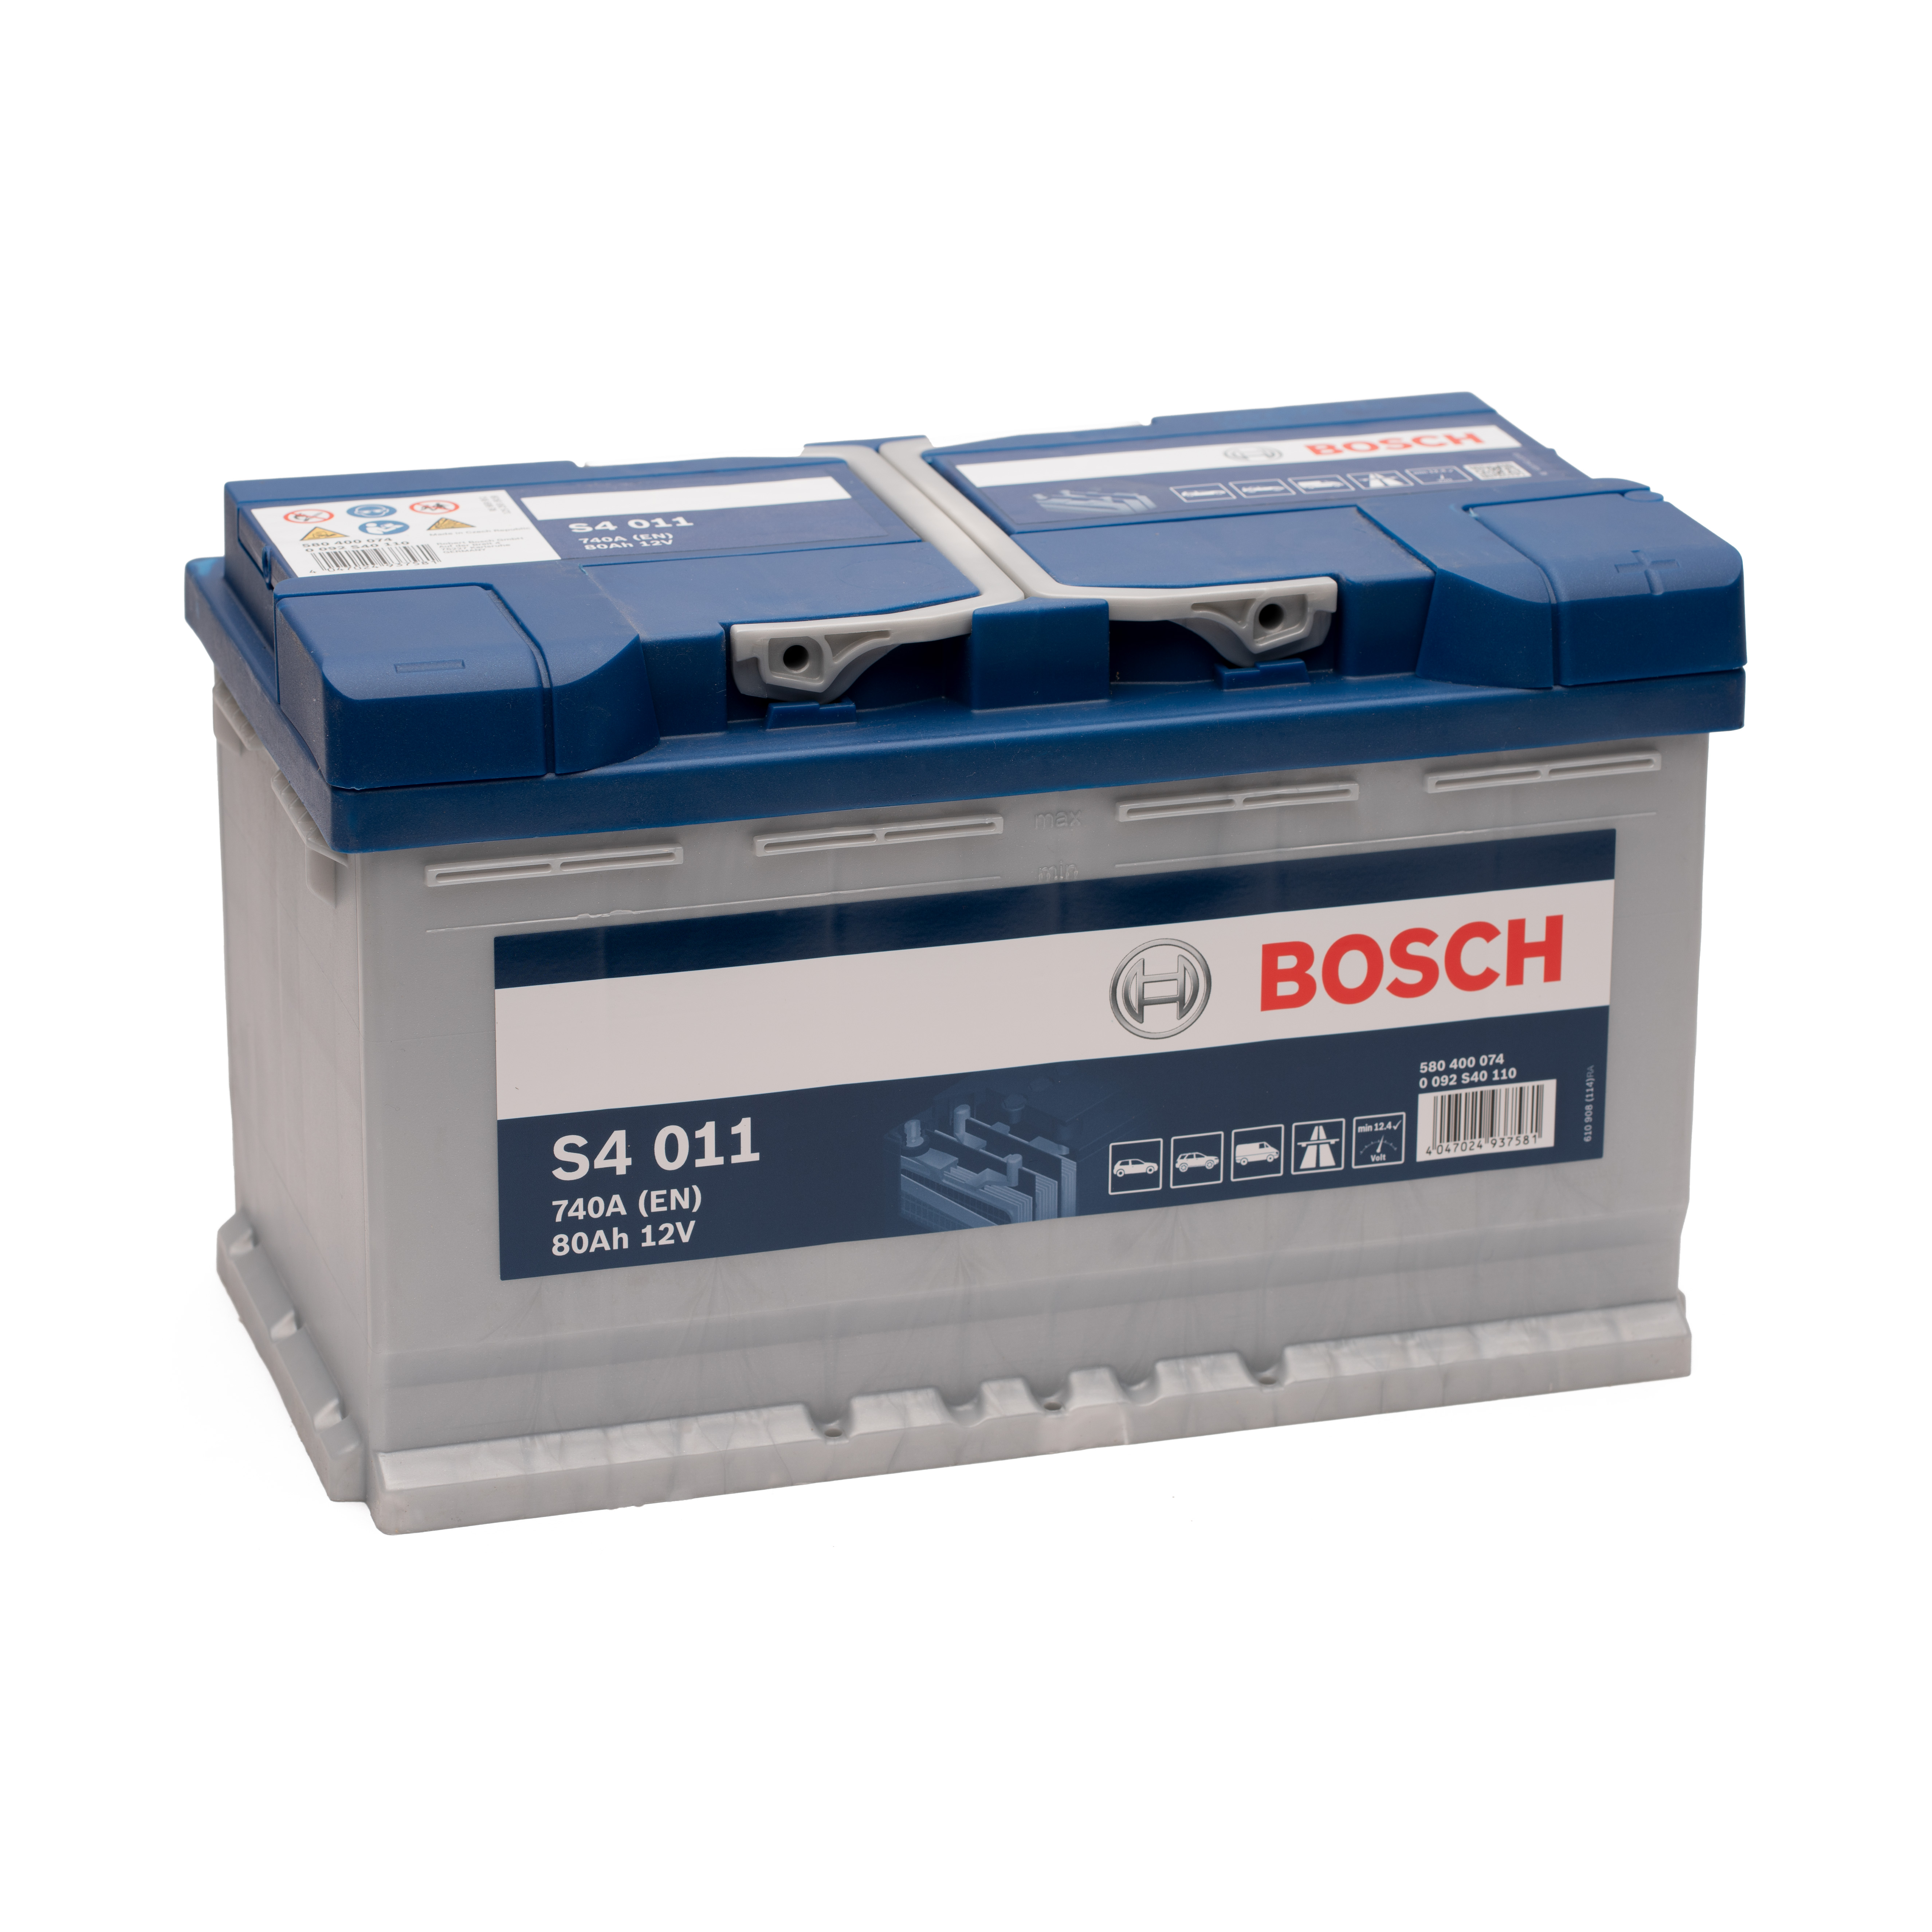 https://swissbatt24.ch/media/image/c9/2b/9f/Bosch-S4-011-80Ah-Autobatterie-580400074.jpg